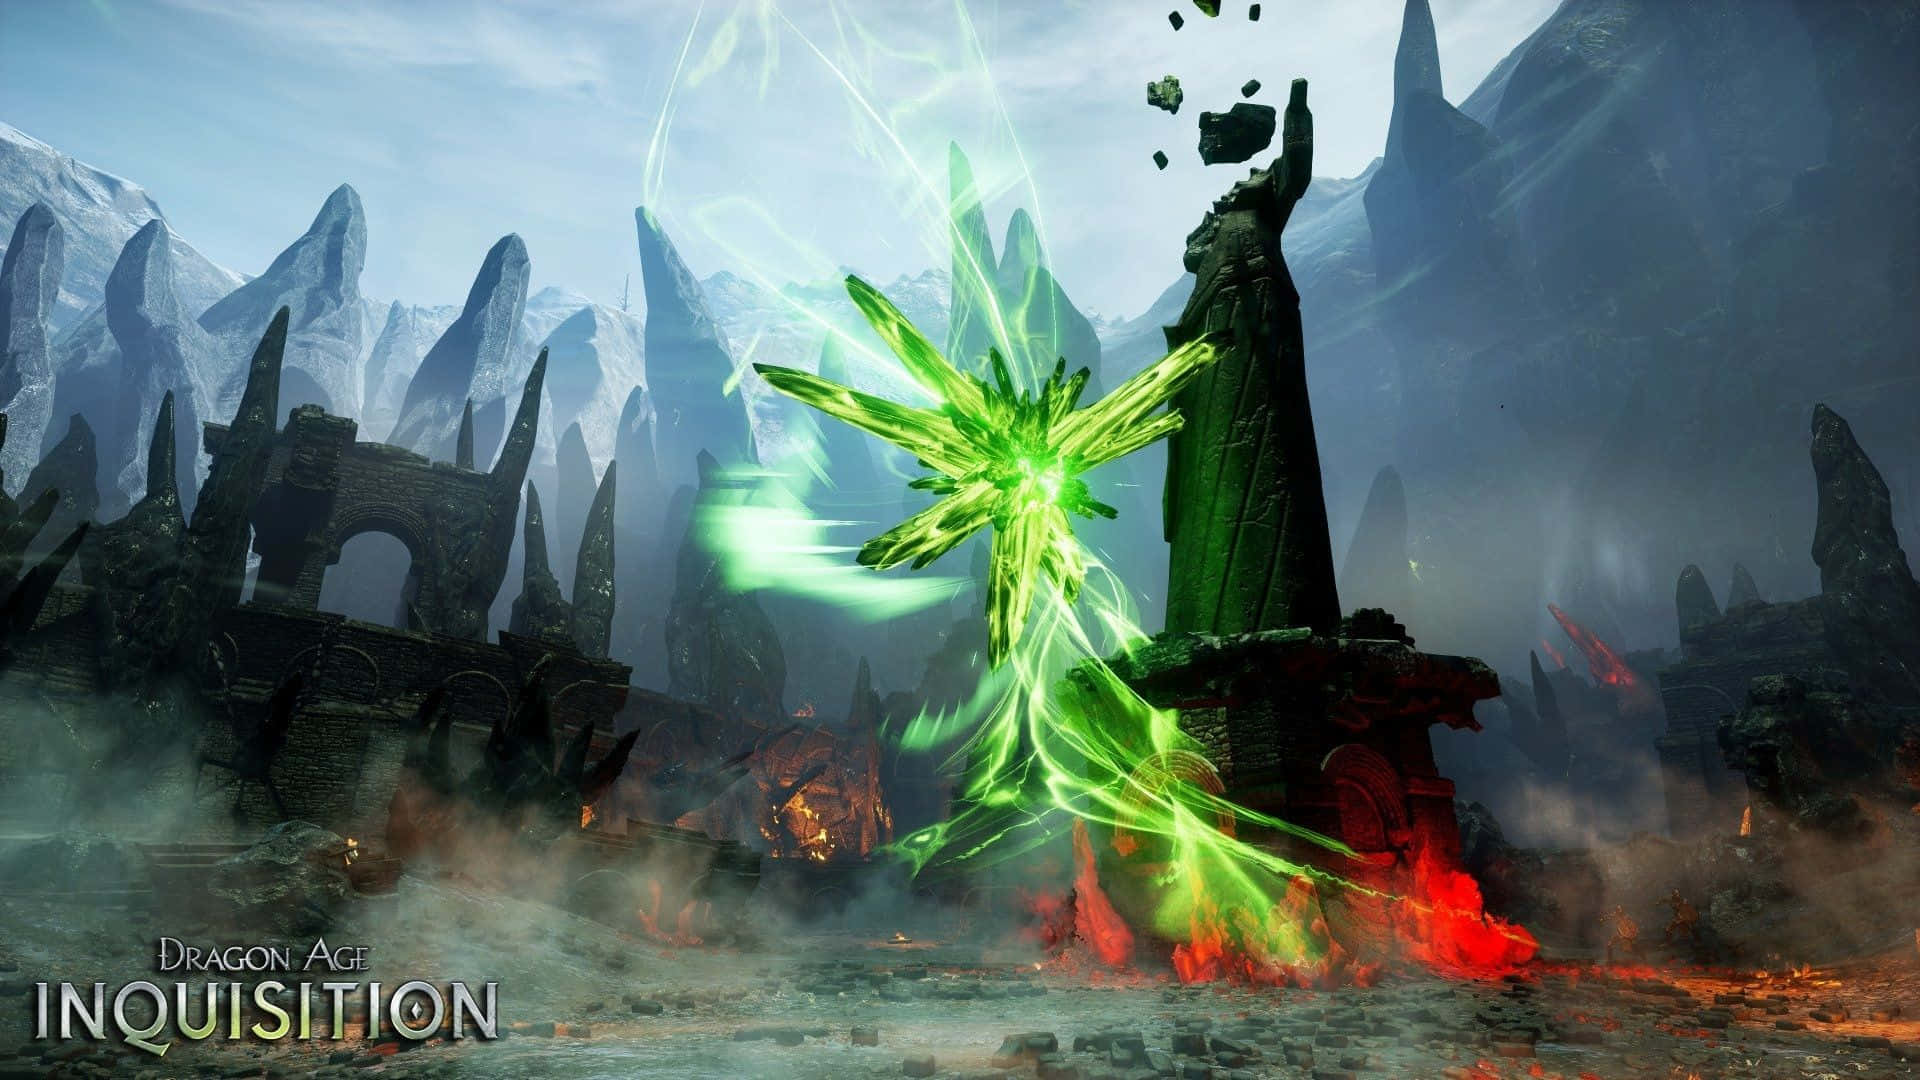 Fondode Pantalla De Dragon Age Inquisition En Hd Con Lyrium Verde